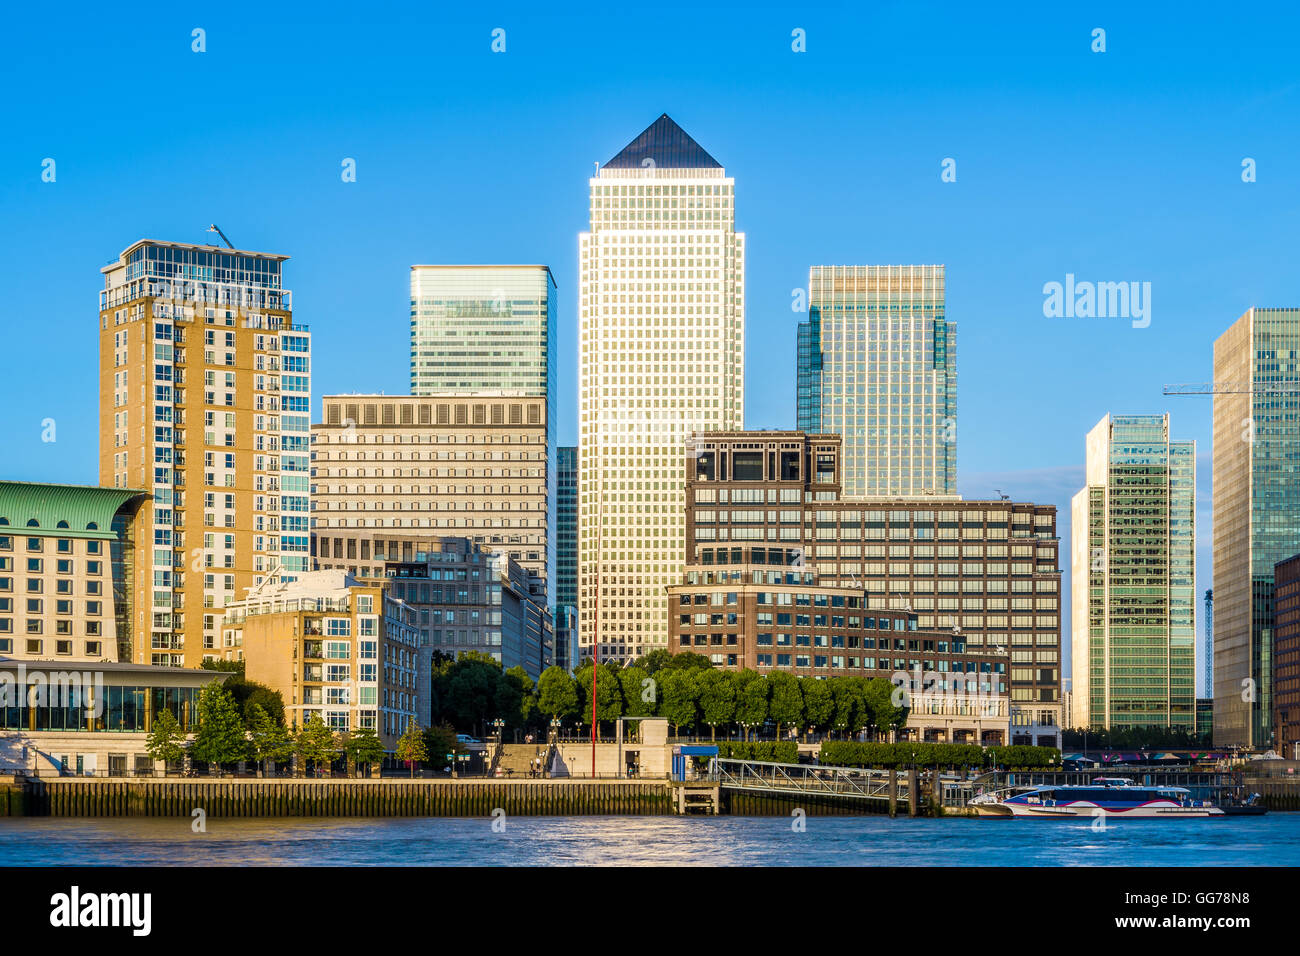 Canary Wharf, pôle financier de Londres pendant la journée Banque D'Images